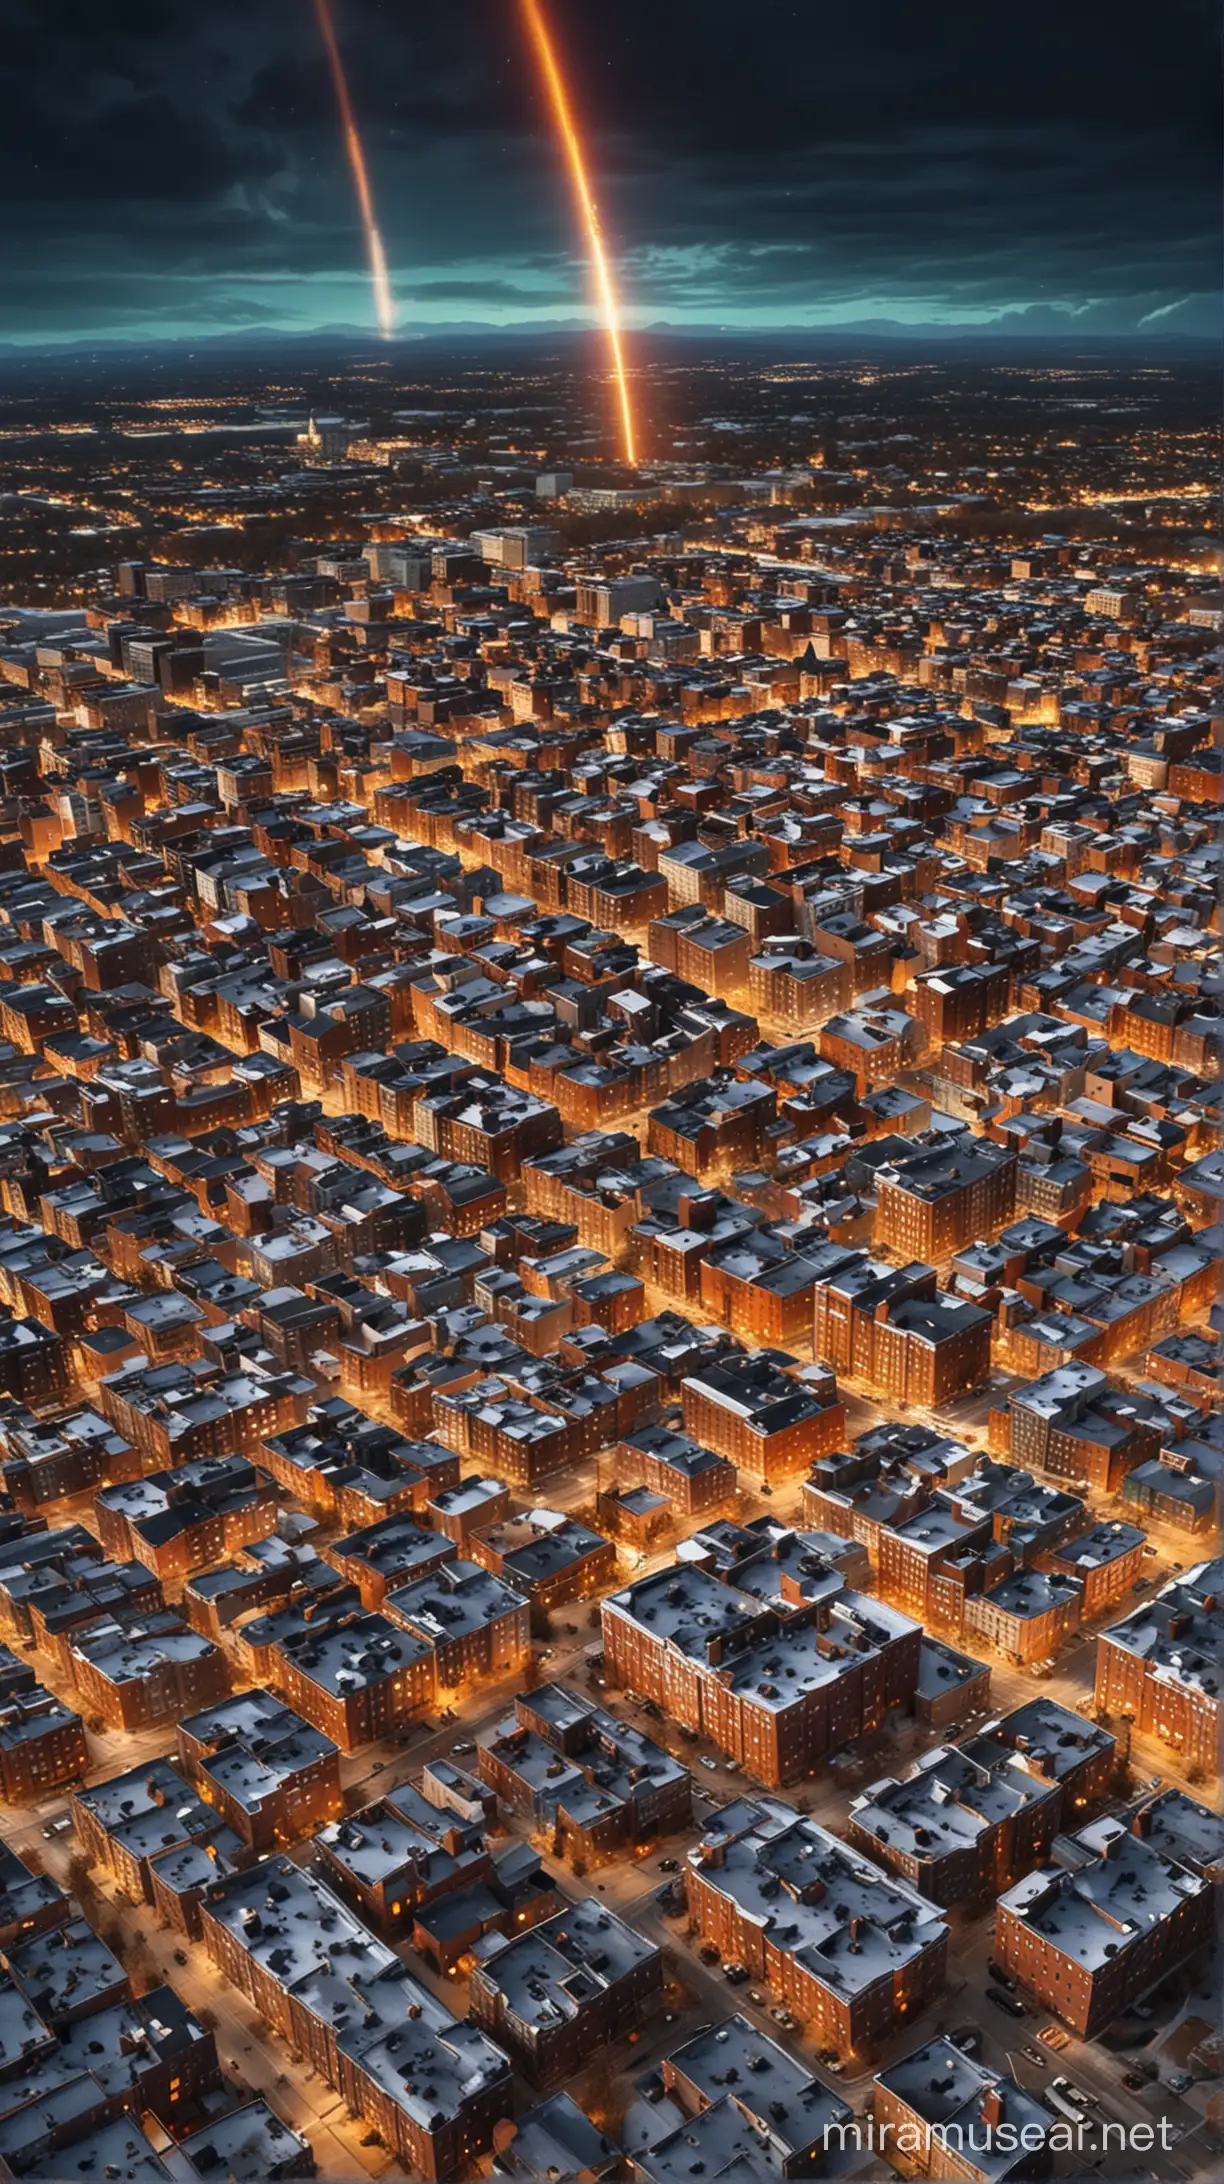 Springfield sous l’assaut de la tempête solaire : Crée une image de la ville de Springfield avec des éclairs solaires frappant les bâtiments, des antennes paraboliques tombant et des écrans d’ordinateur s’éteignant. Utilise des couleurs vives pour accentuer l’impact.